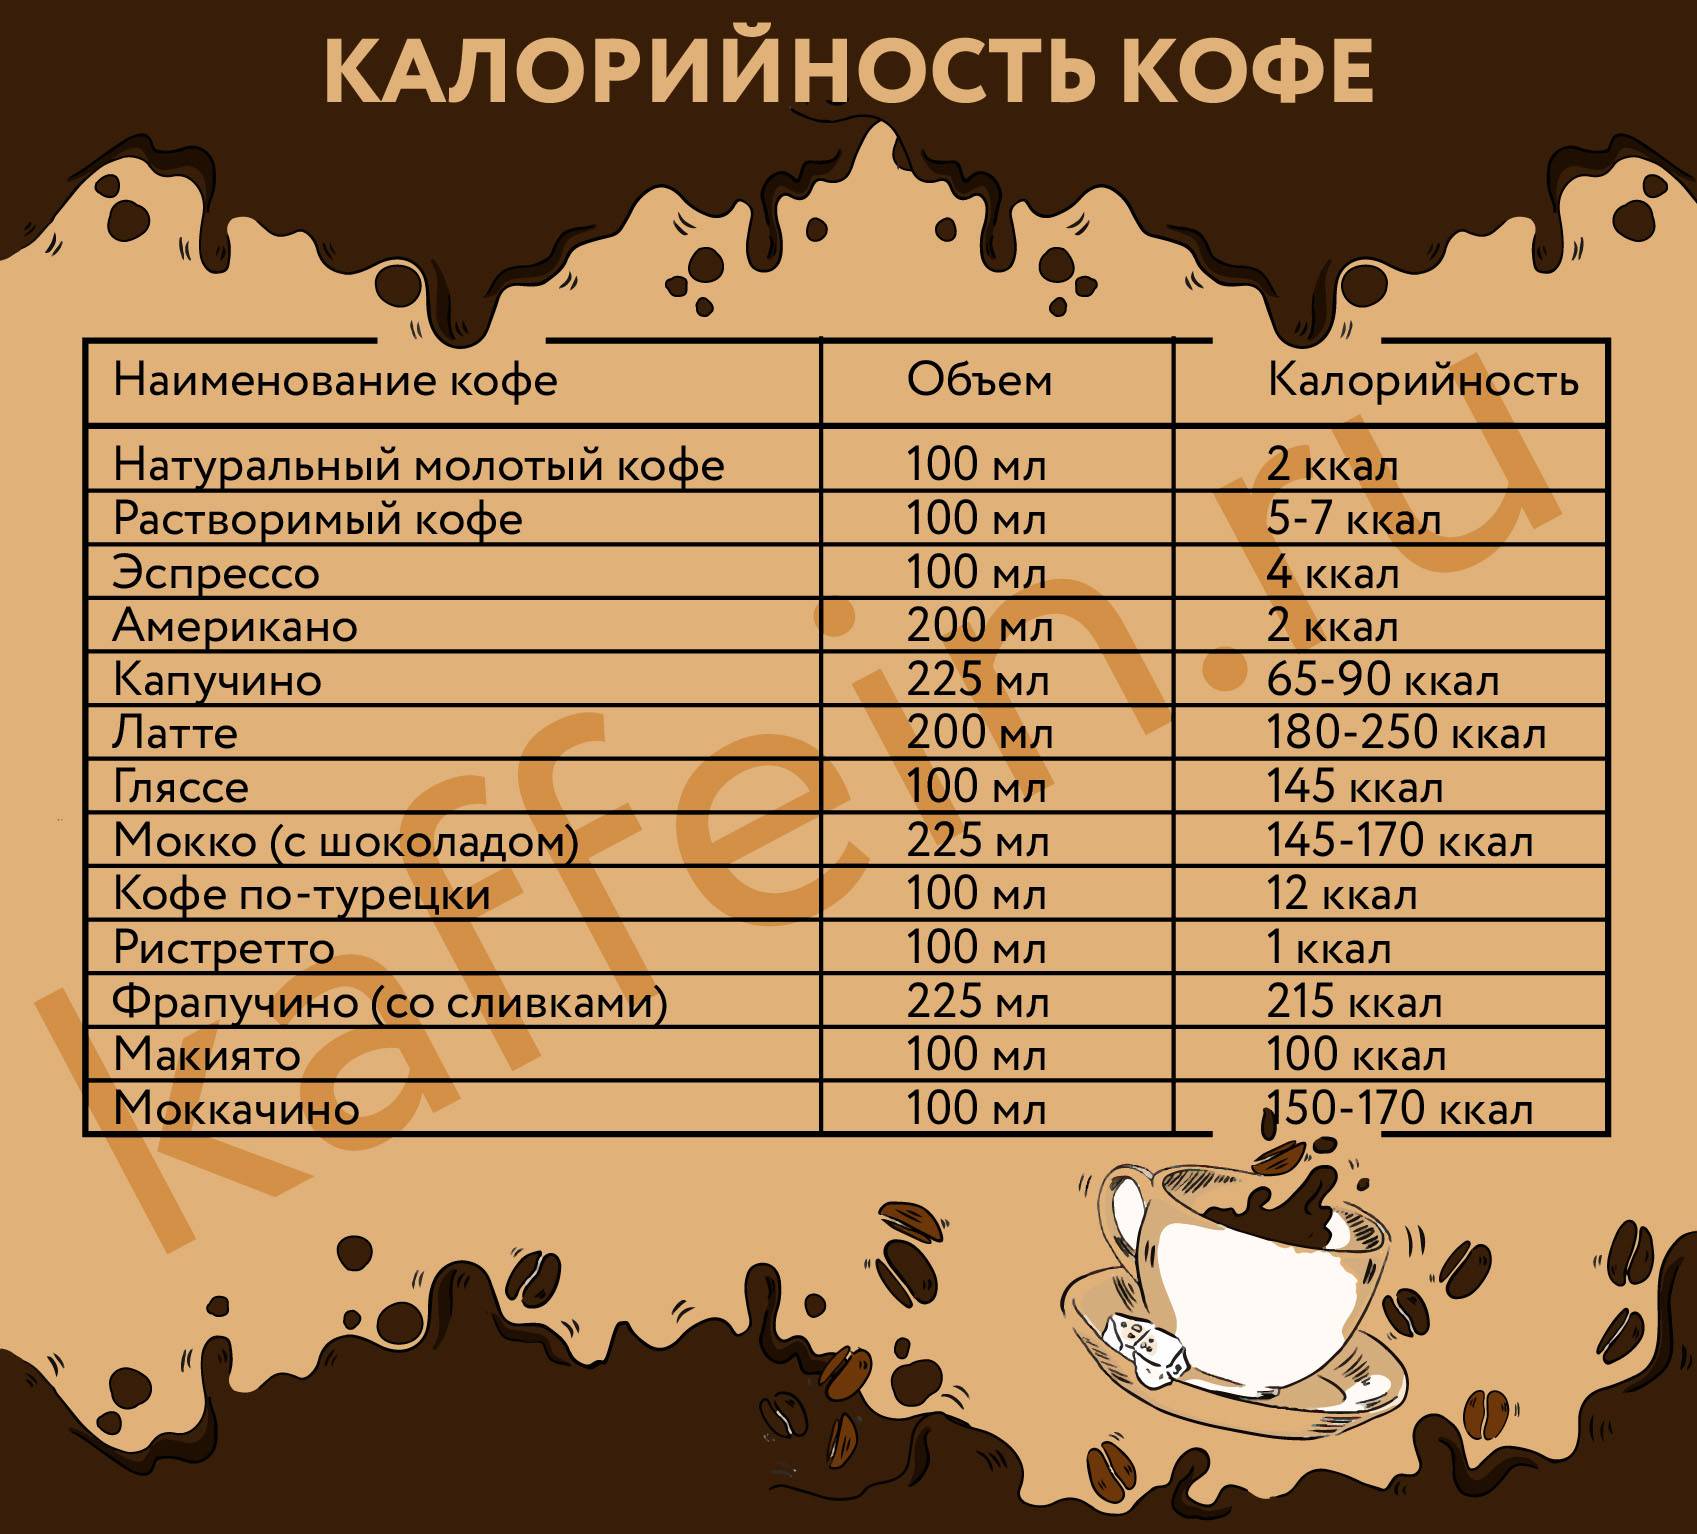 Гликемический индекс кофе: натурального, растворимого, с молоком, без сахара